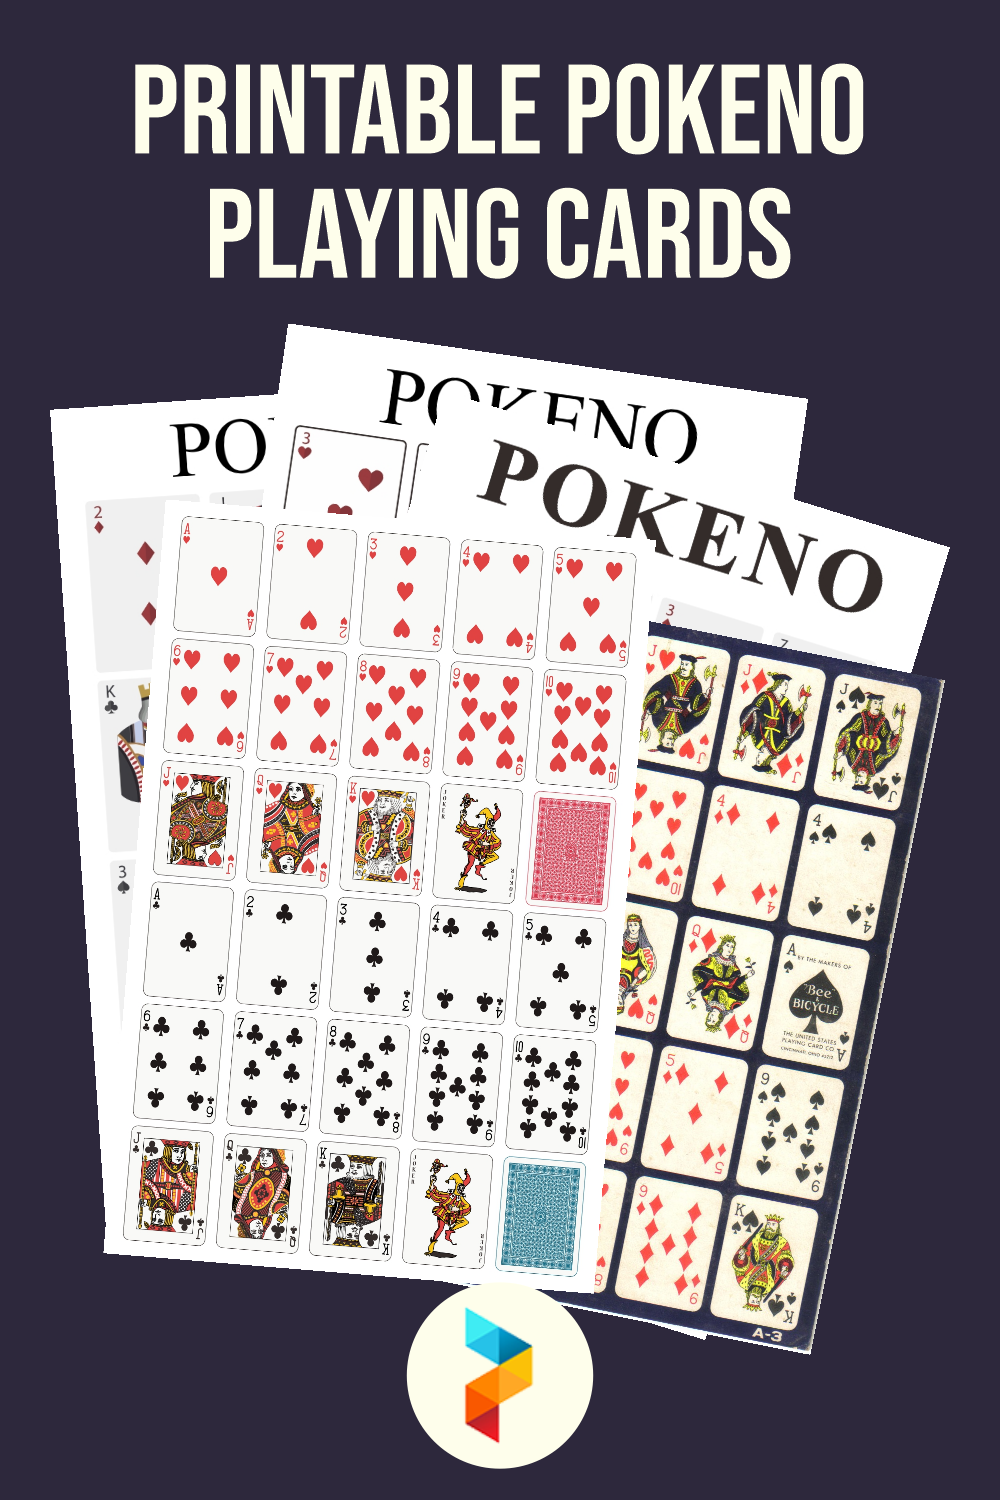 Printable Pokeno Playing Cards